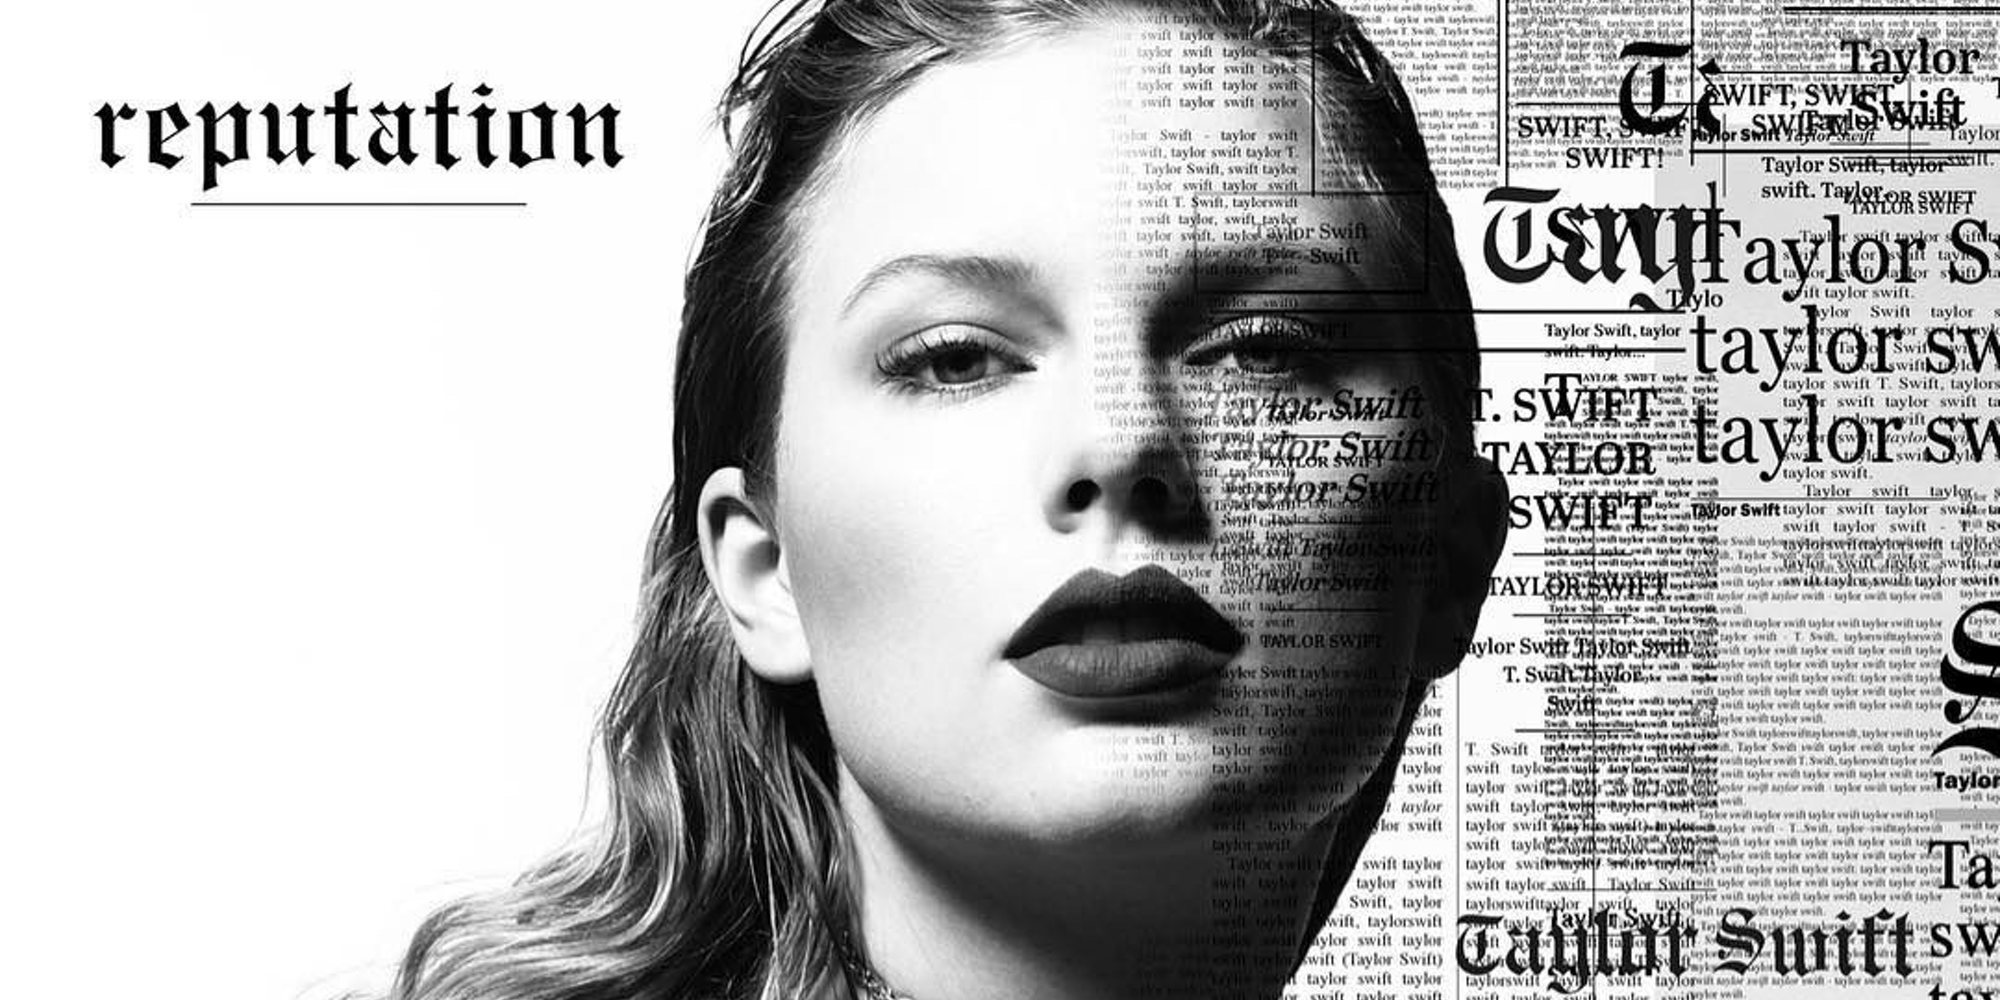 Tras la polémica de Taylor Swift y su anterior discográfica, sus antiguos discos multiplican sus ventas